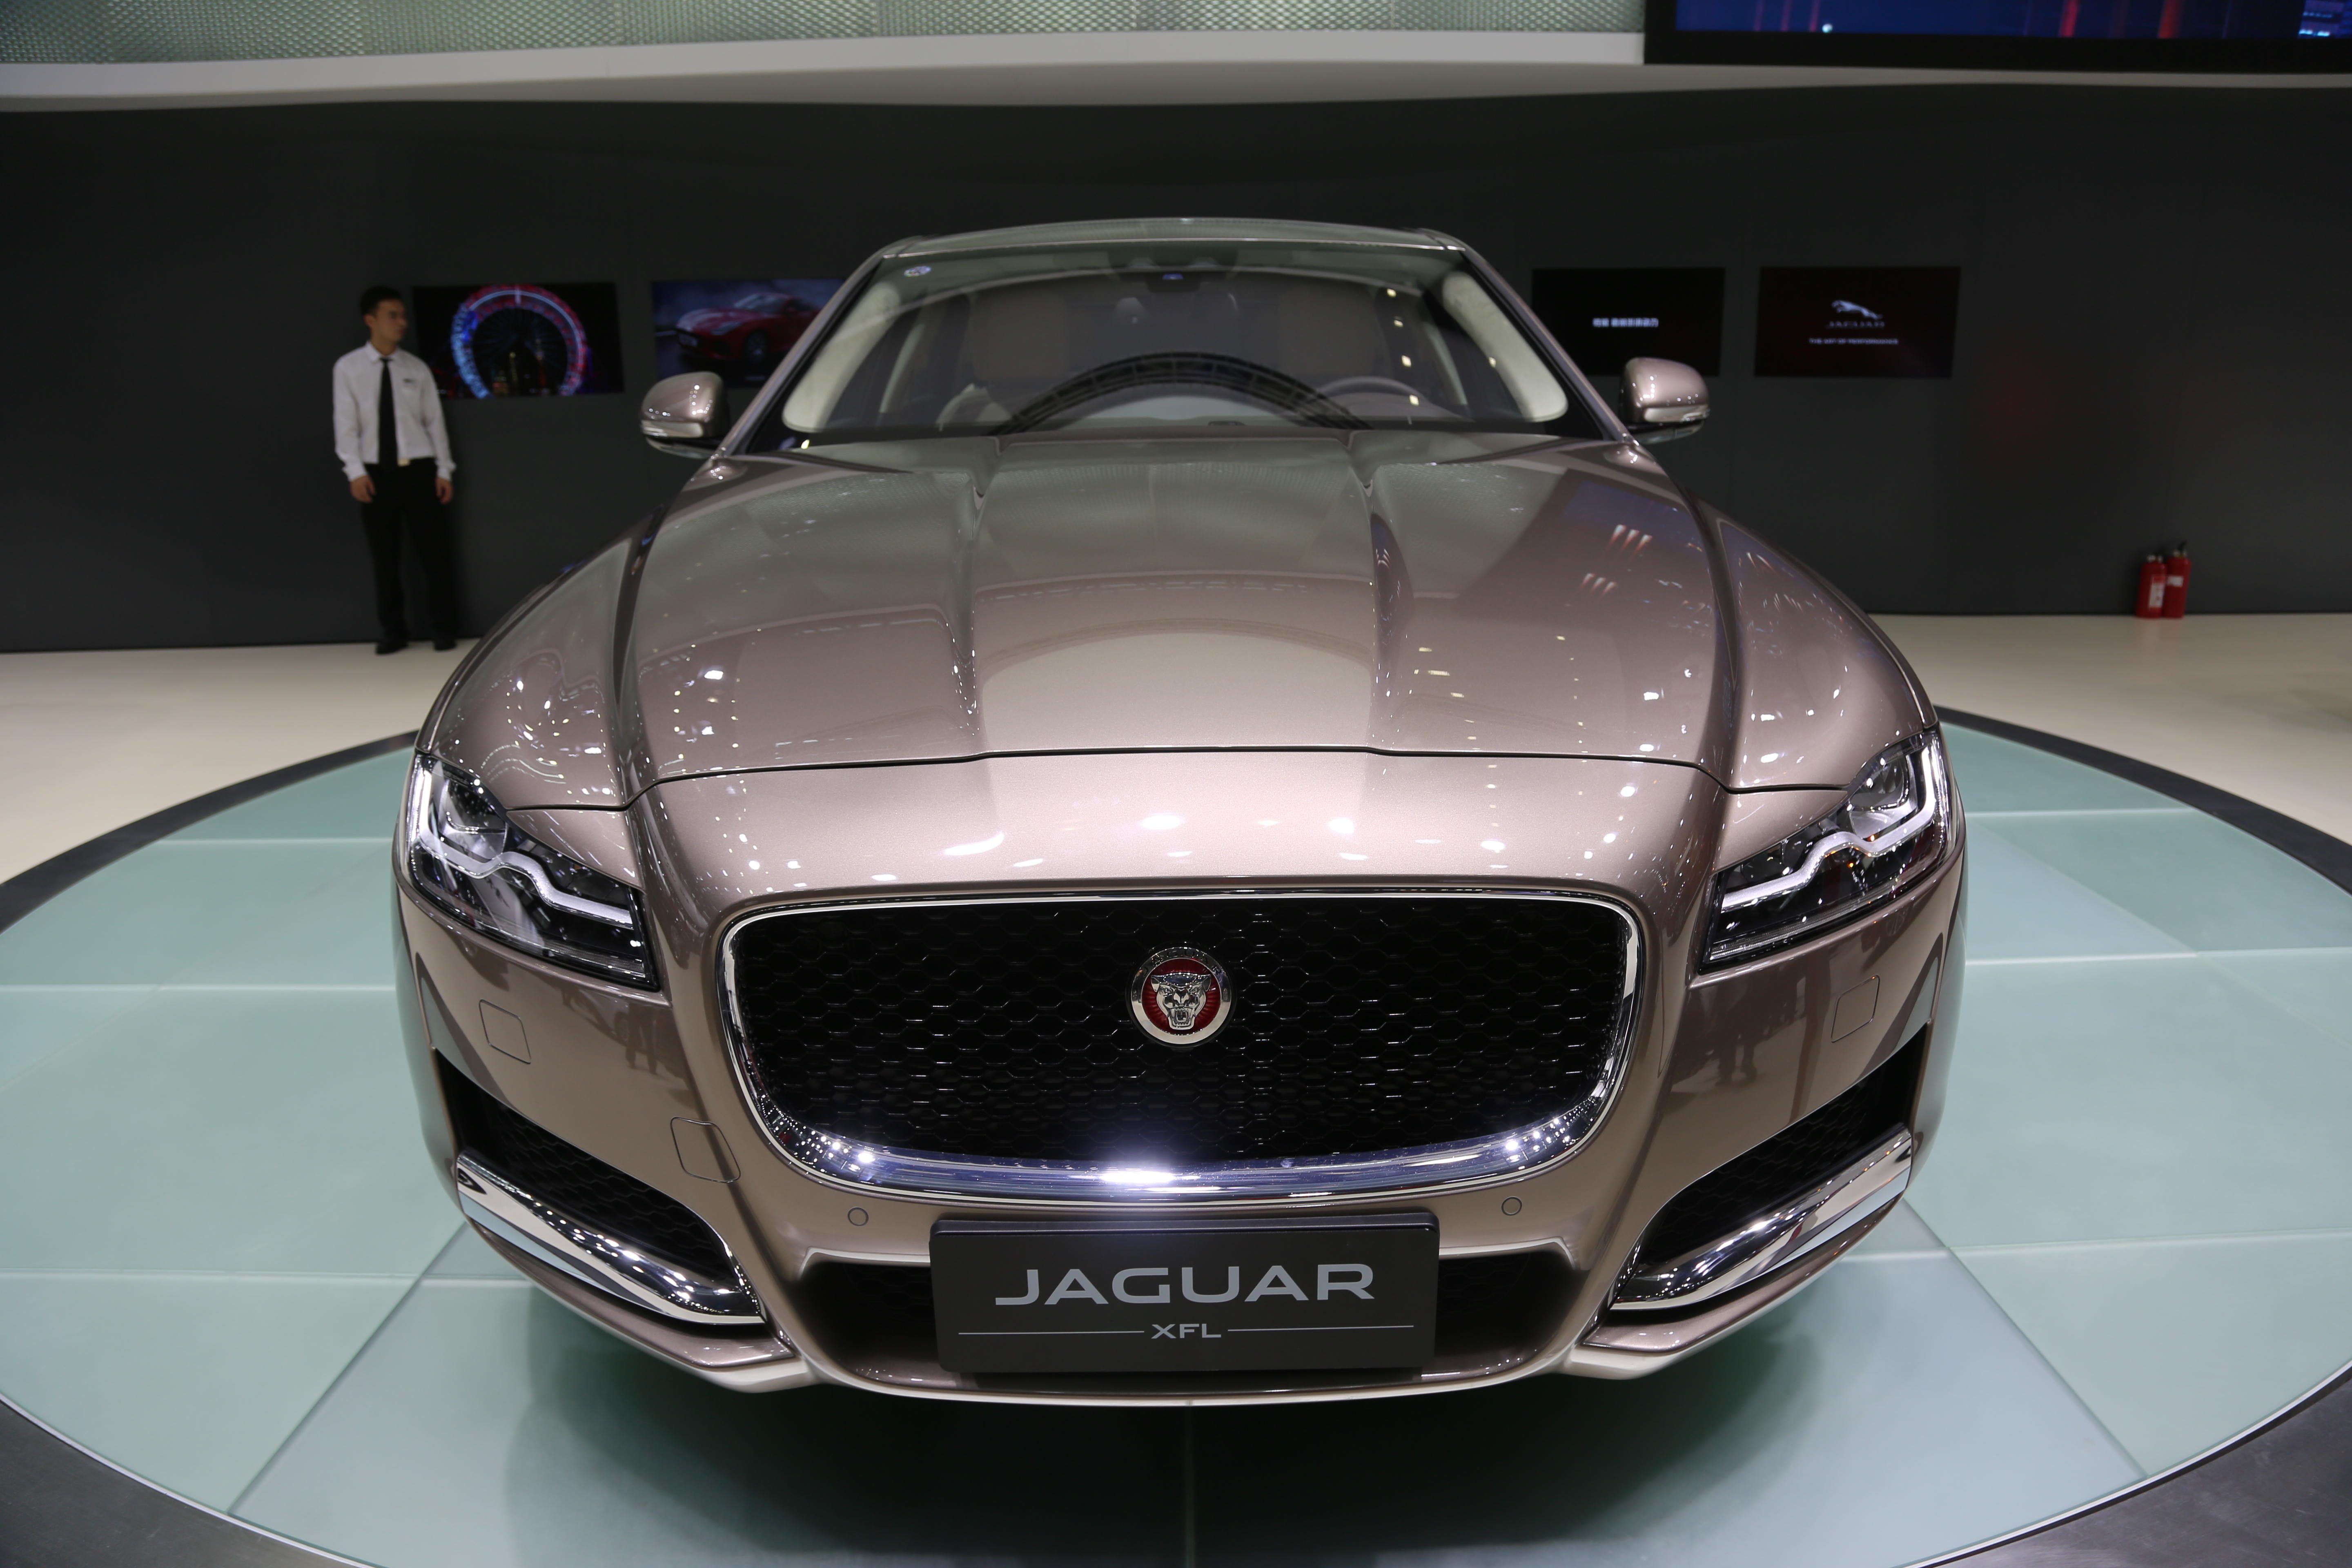 捷豹(jaguar),又称美洲豹汽车,全球闻名的英国汽车品牌